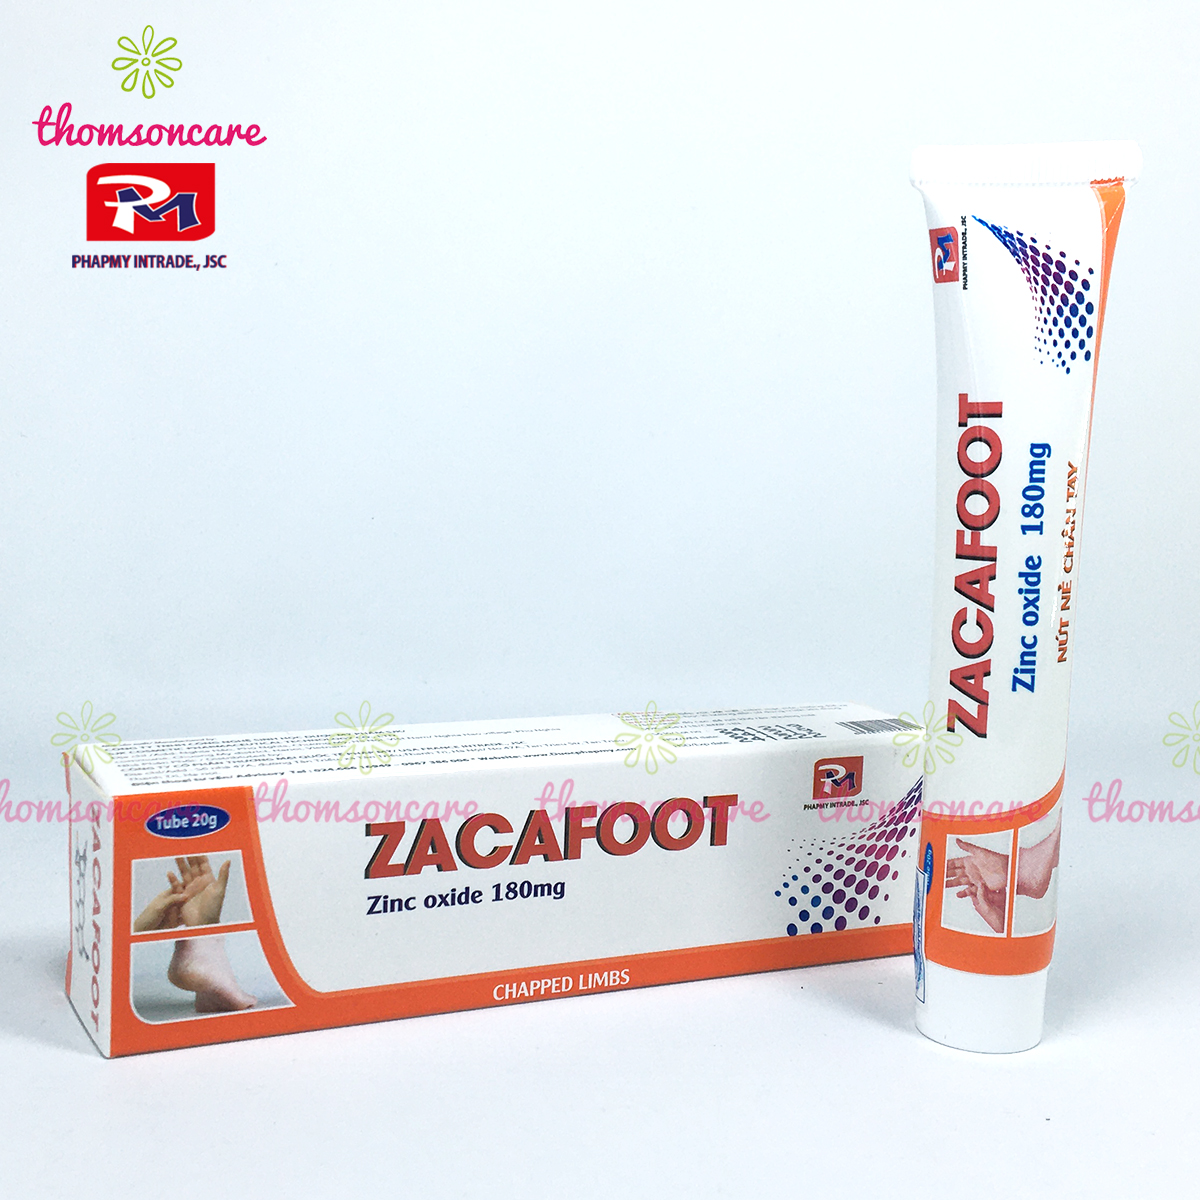 Zacafoot - Kem dưỡng ẩm, giảm khô, nẻ, nứt gót chân, tay - Từ Kẽm Oxyd, tinh chất nghệ Nano Curcumin, vaseline và mật ong